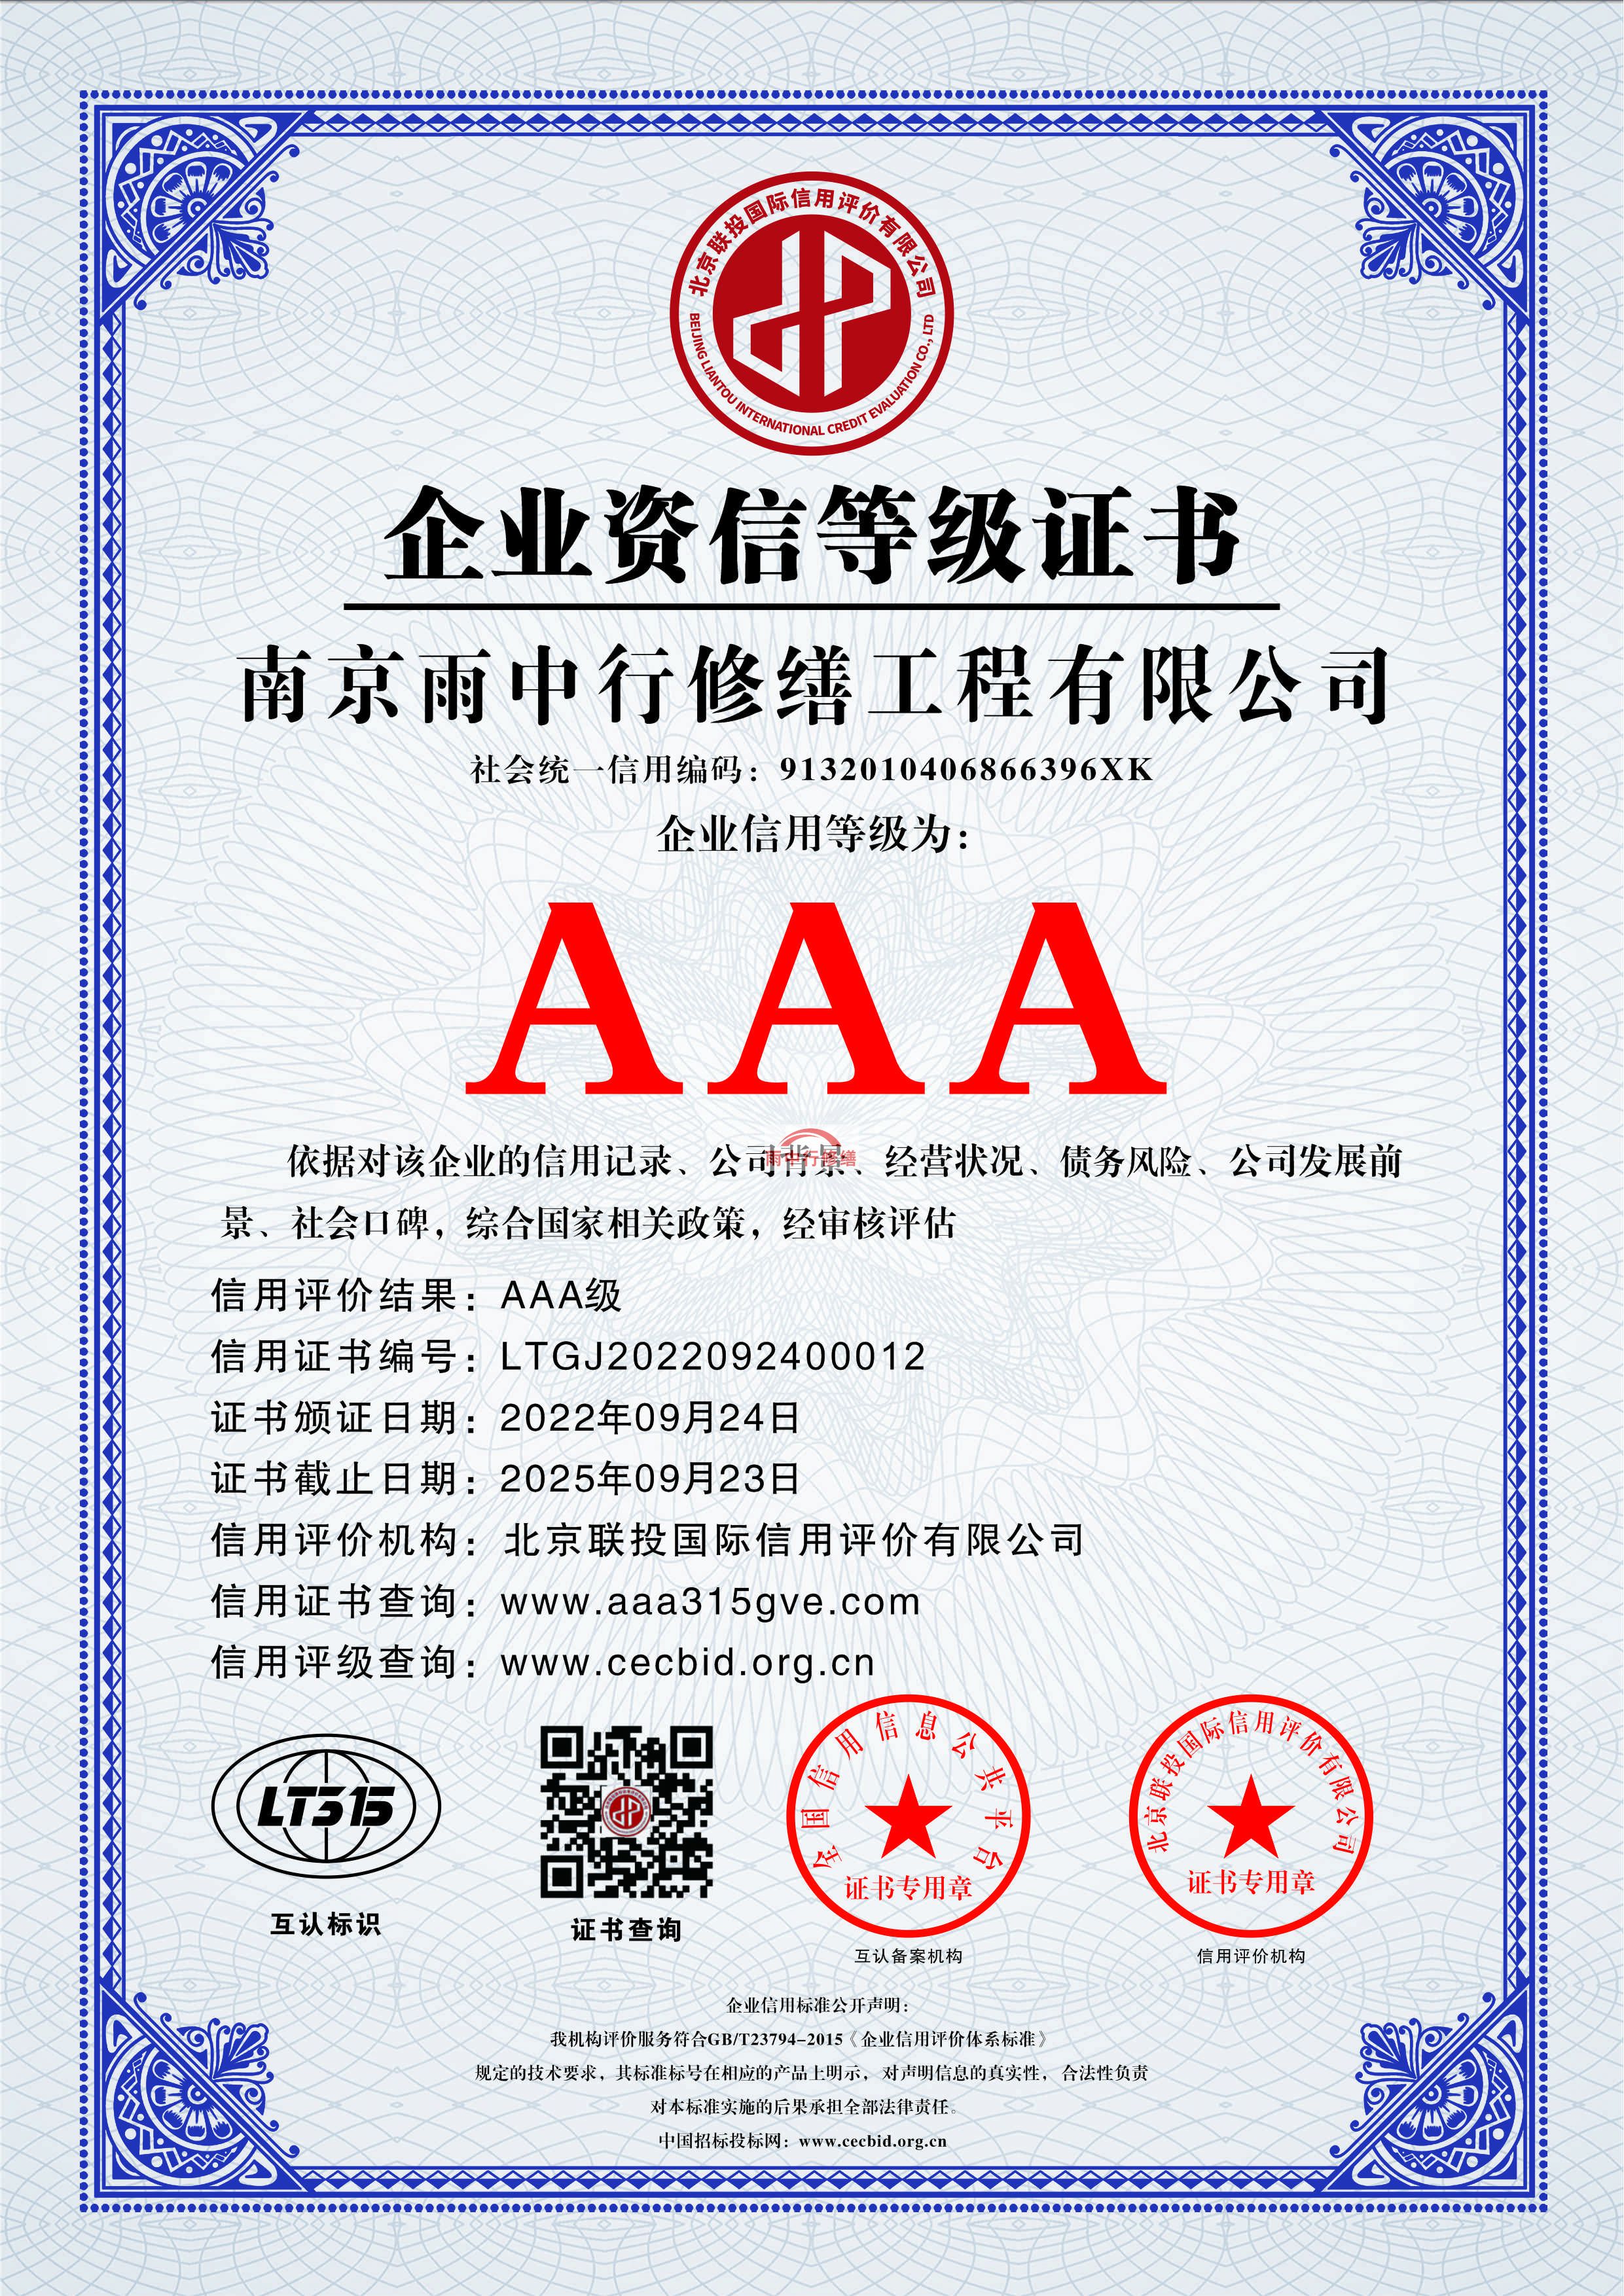 北京雨中行修缮授予AAA级诚信企业